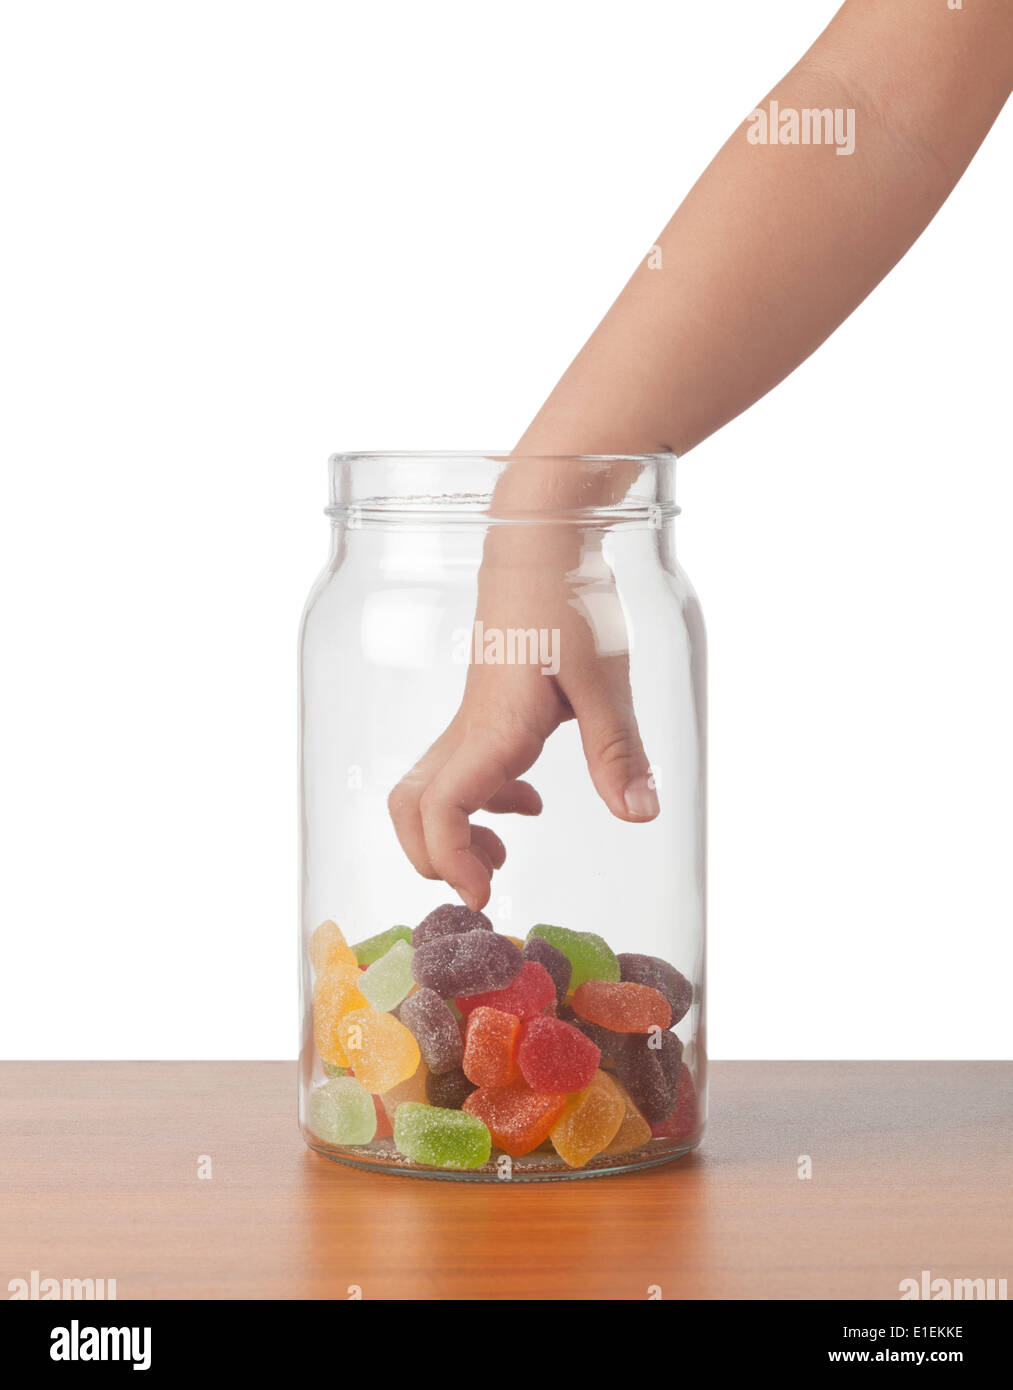 Bambino la mano protesa a prendere candy da un vaso Foto Stock